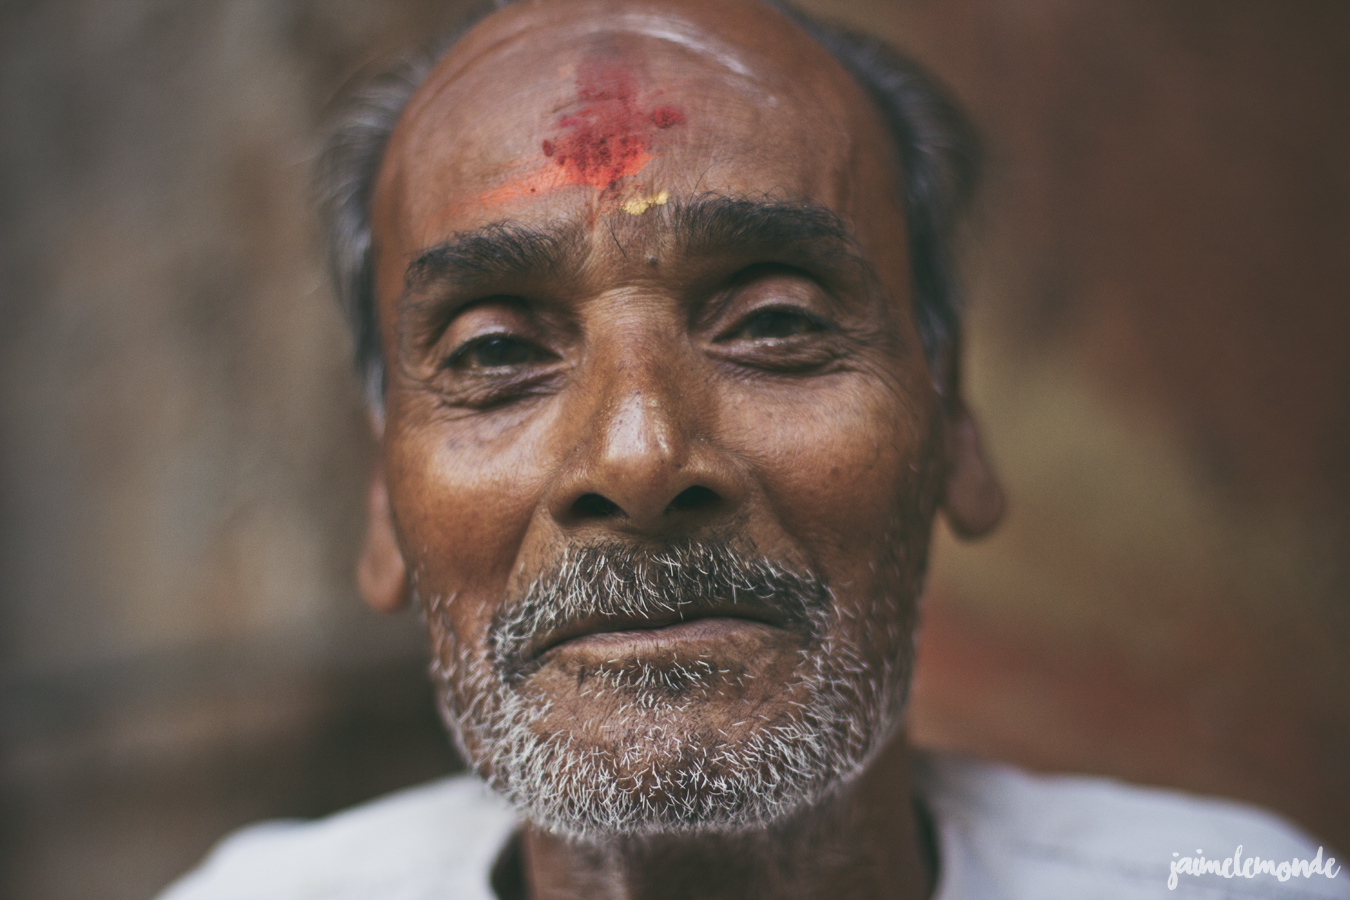 blog voyage - 33 portraits en Inde - ©jaimelemonde (27)